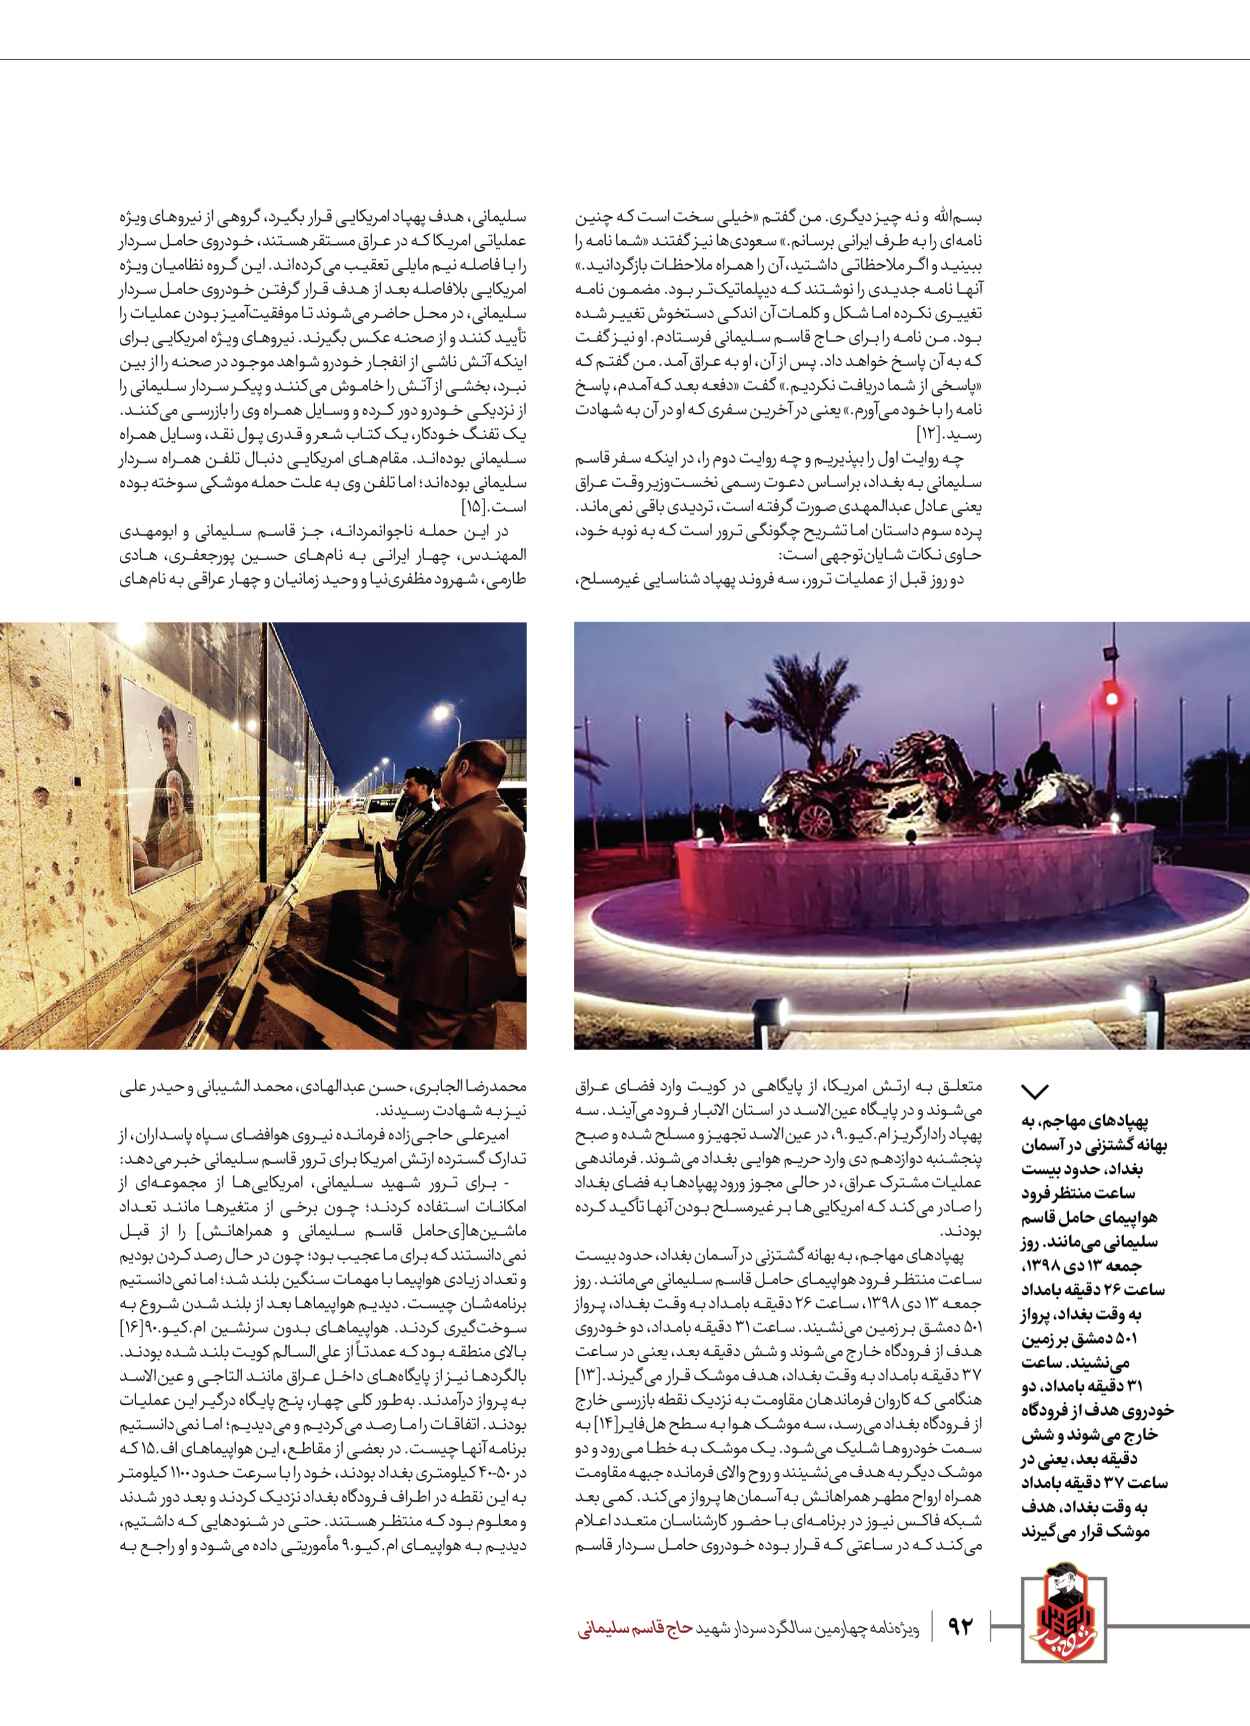 روزنامه ایران - ویژه نامه ویژ ه نامه چهارمین سالگرد شهادت سردار سلیمانی - ۱۳ دی ۱۴۰۲ - صفحه ۹۲